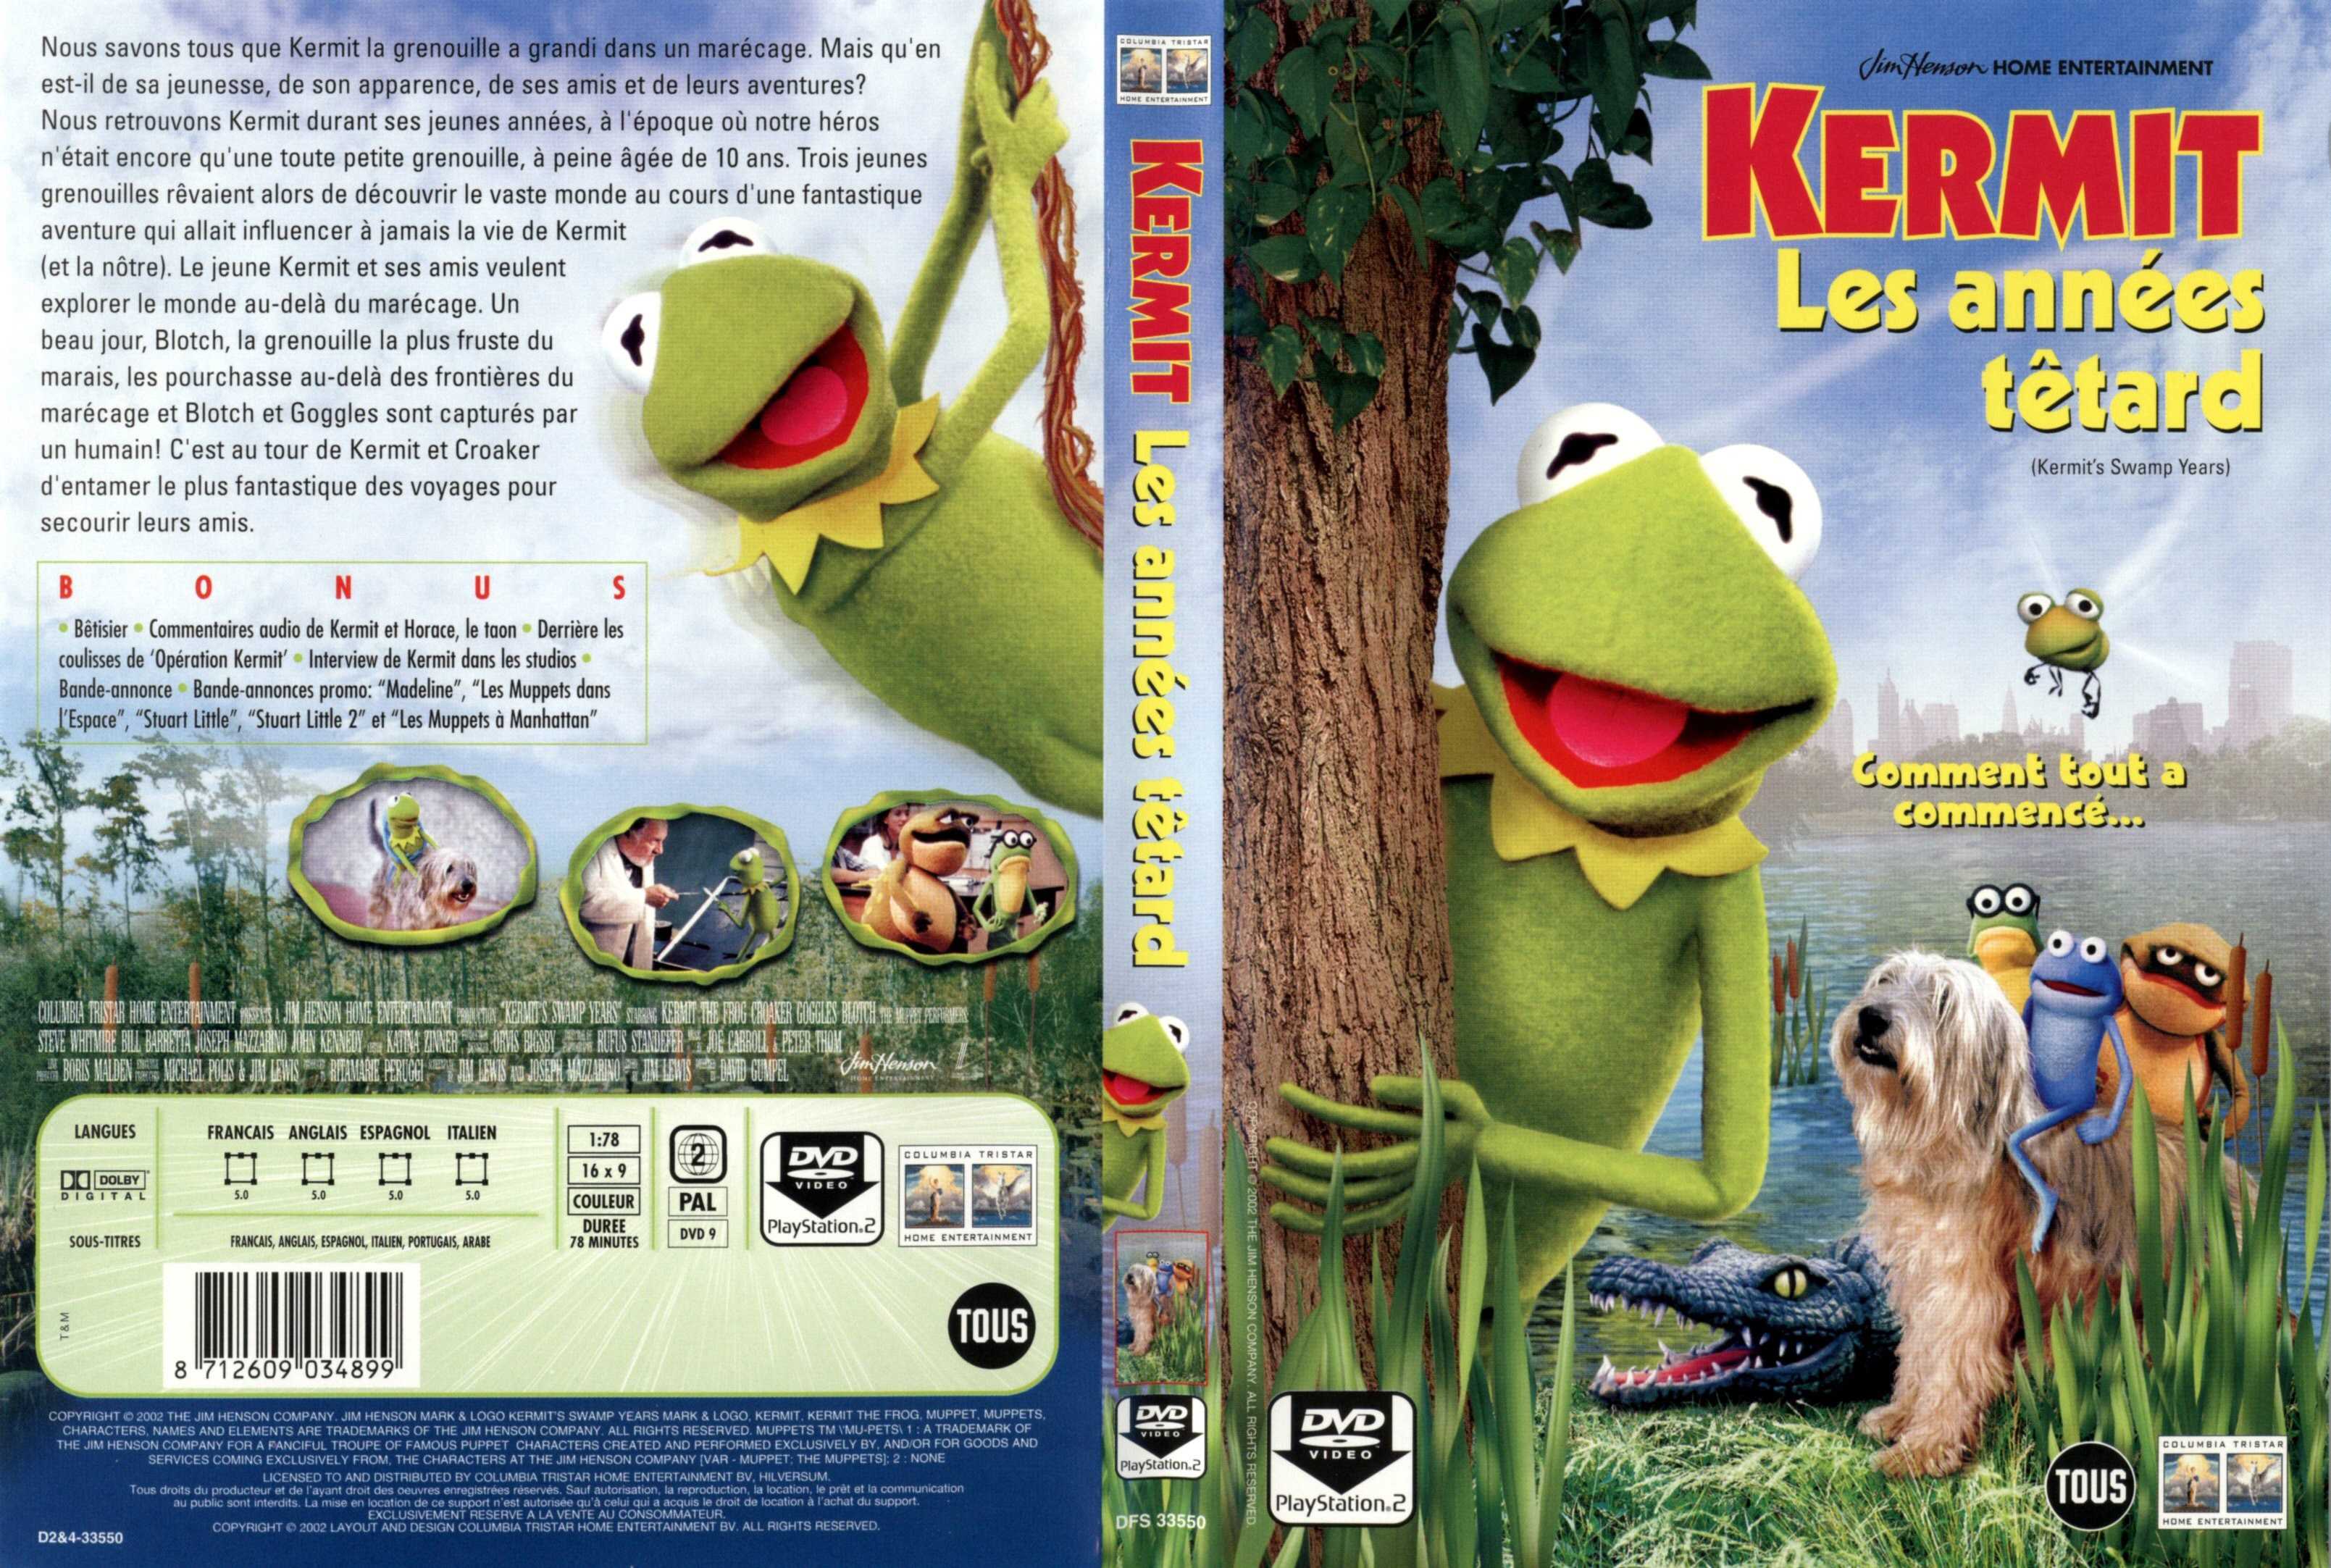 Jaquette DVD Kermit les annes ttard